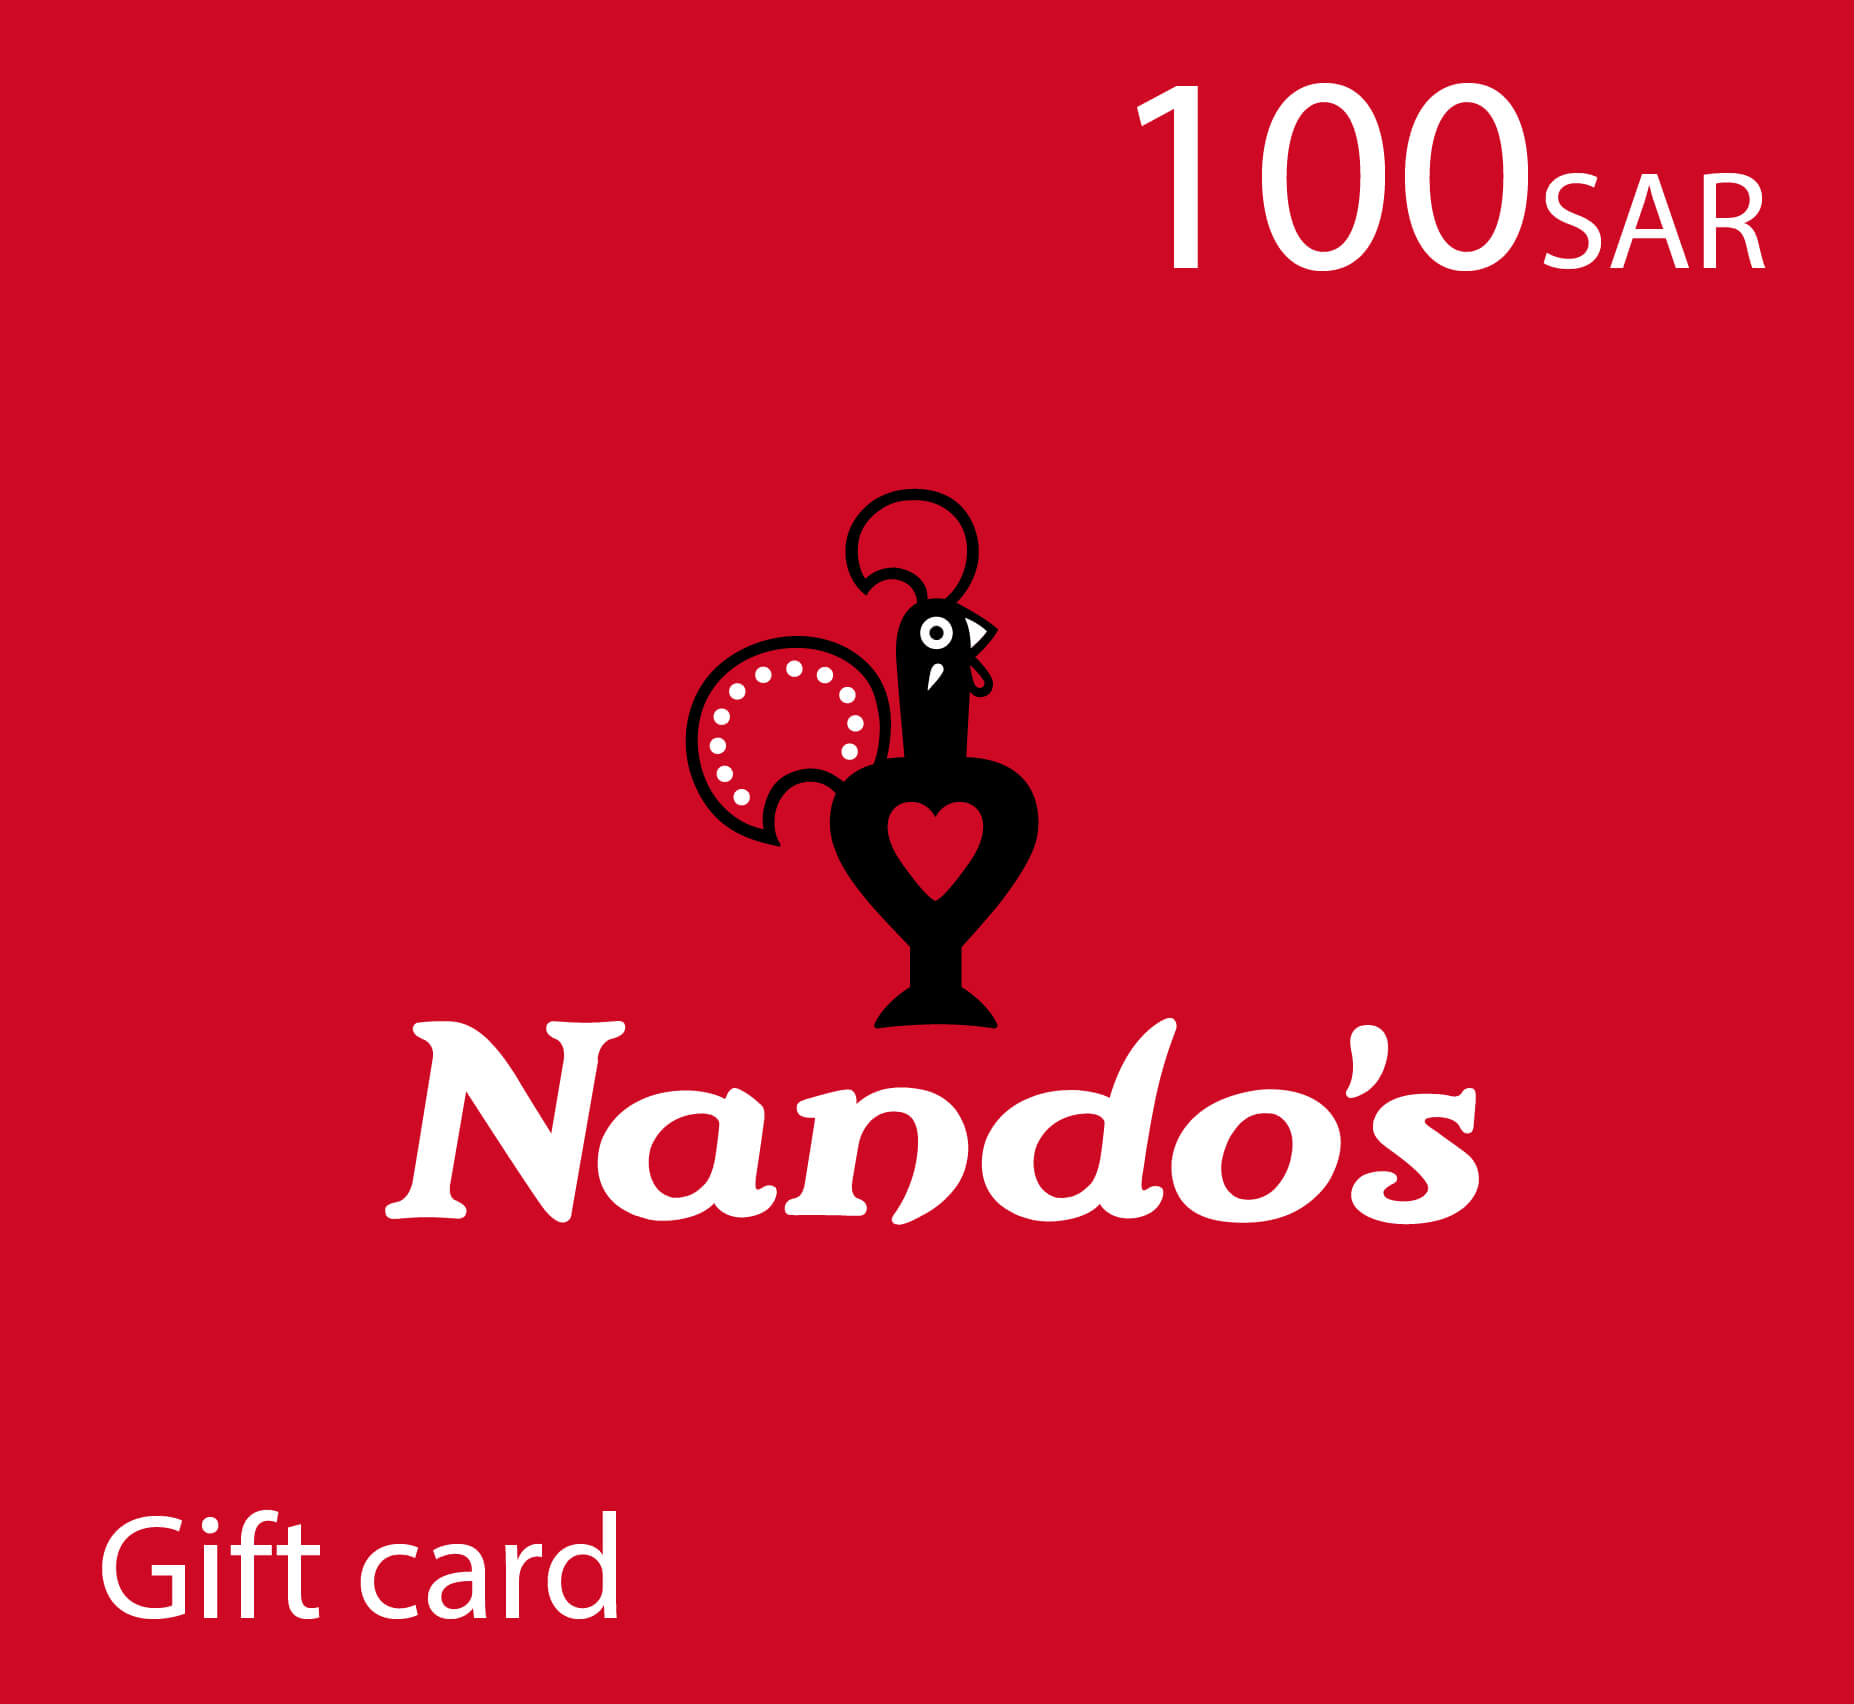 Nando's Gift Card - 100 SAR